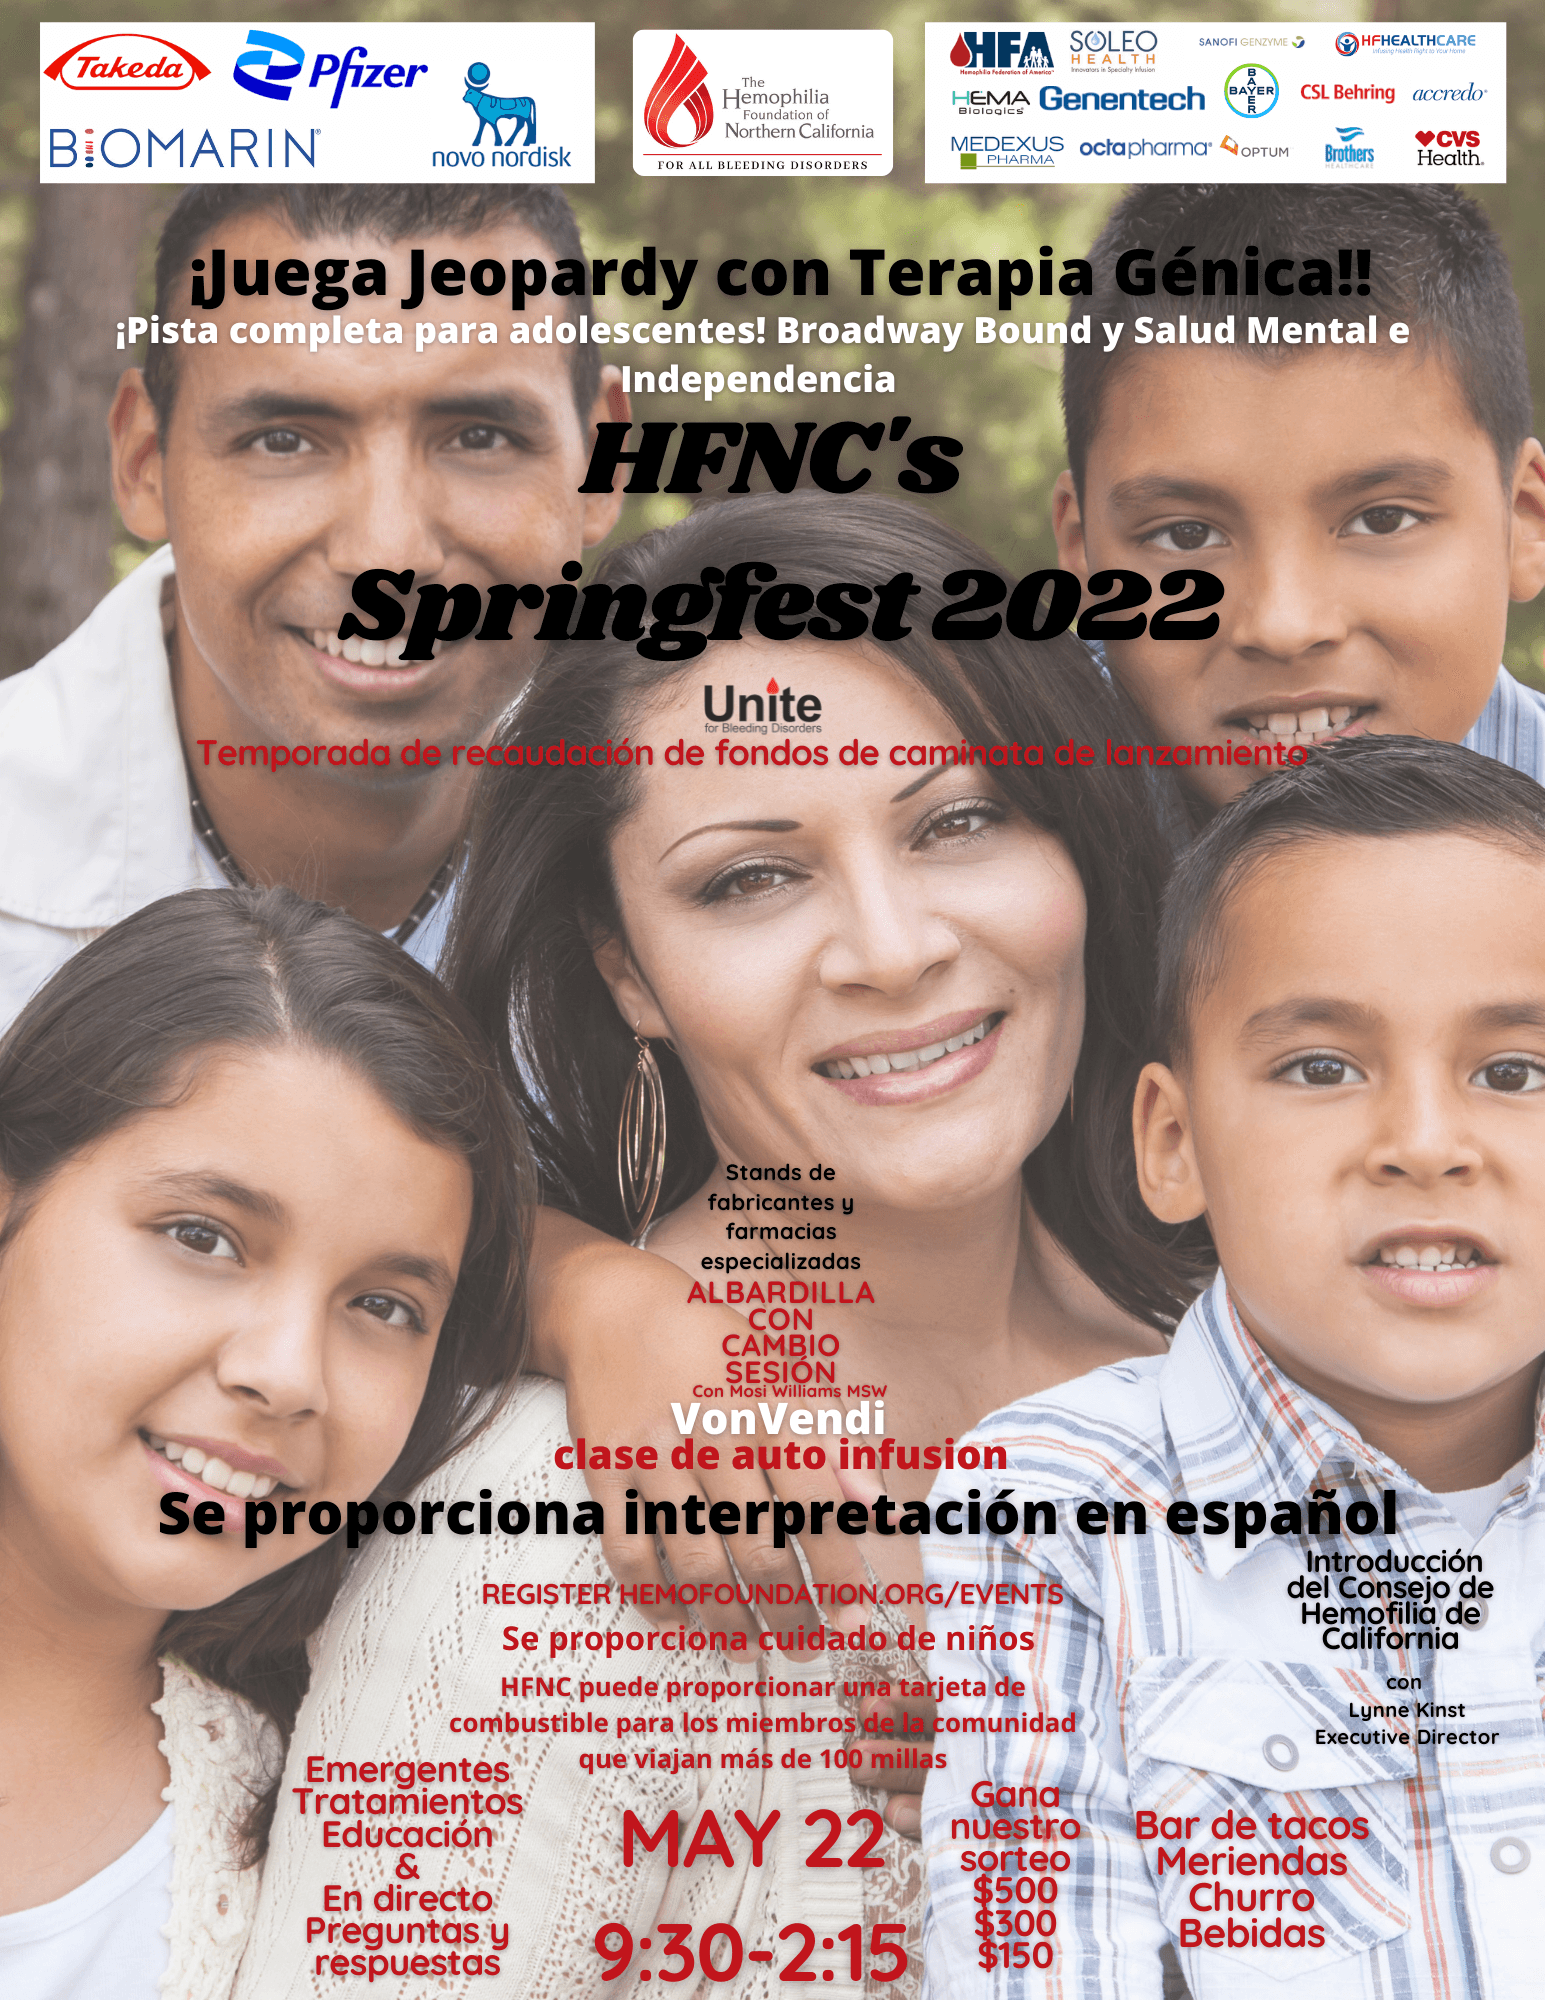 5/22 Springfest para Espanol - Las inscripciones cierran el 19/05!